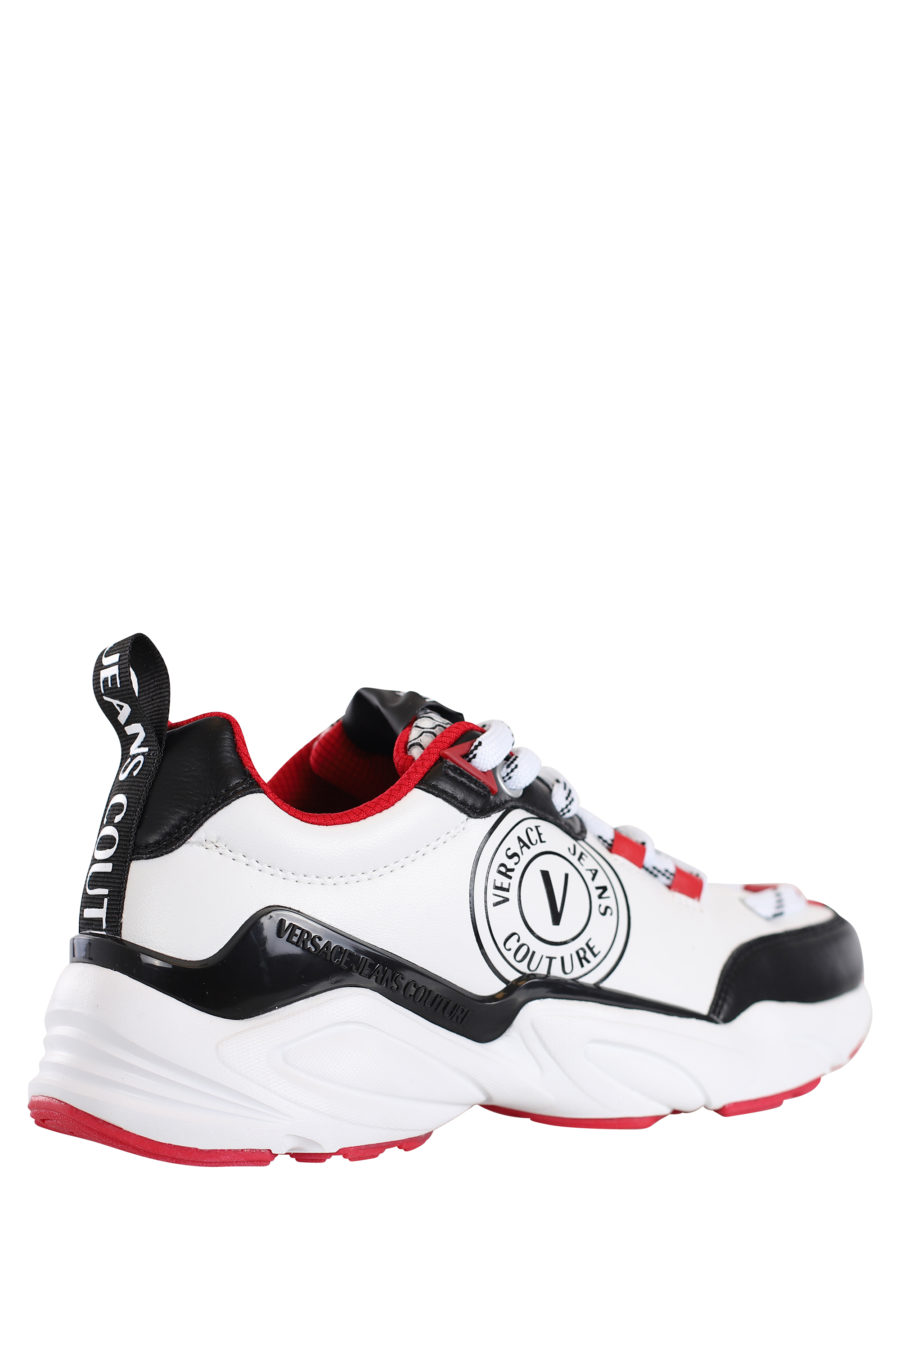 Zapatillas blancas con detalles negros y rojos "Wave" - IMG 0190